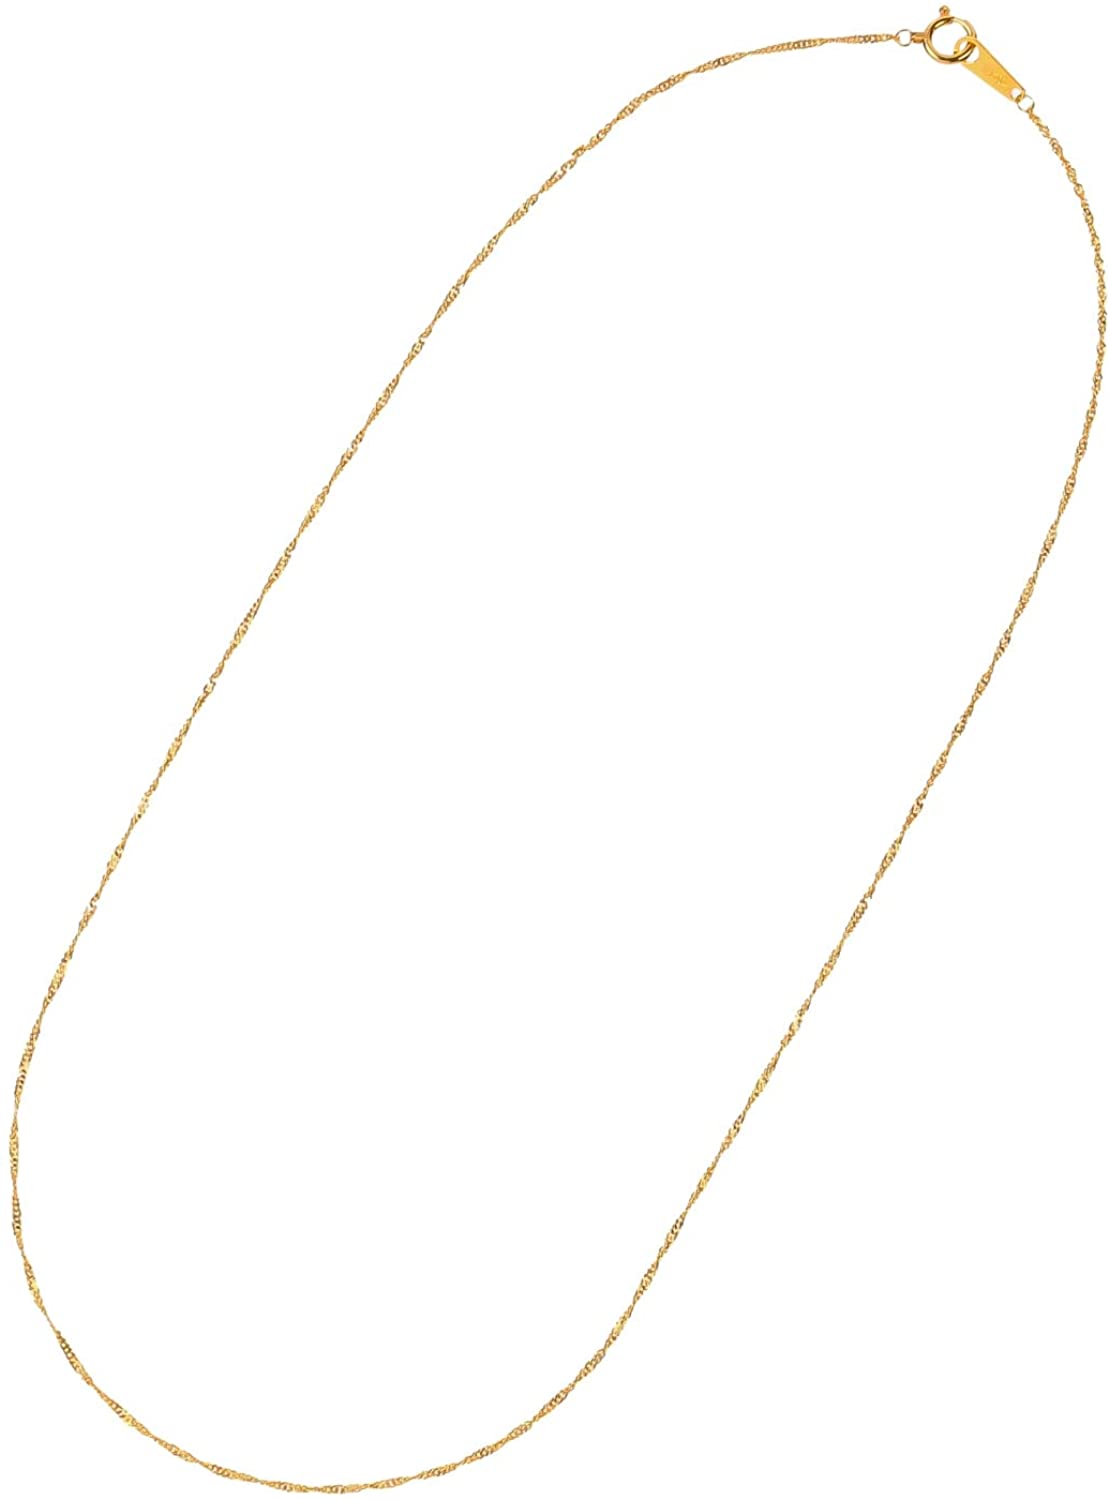 24金ネックレス K24 スクリューチェーン 日本製 純金 検定印 1.7g 42cm 